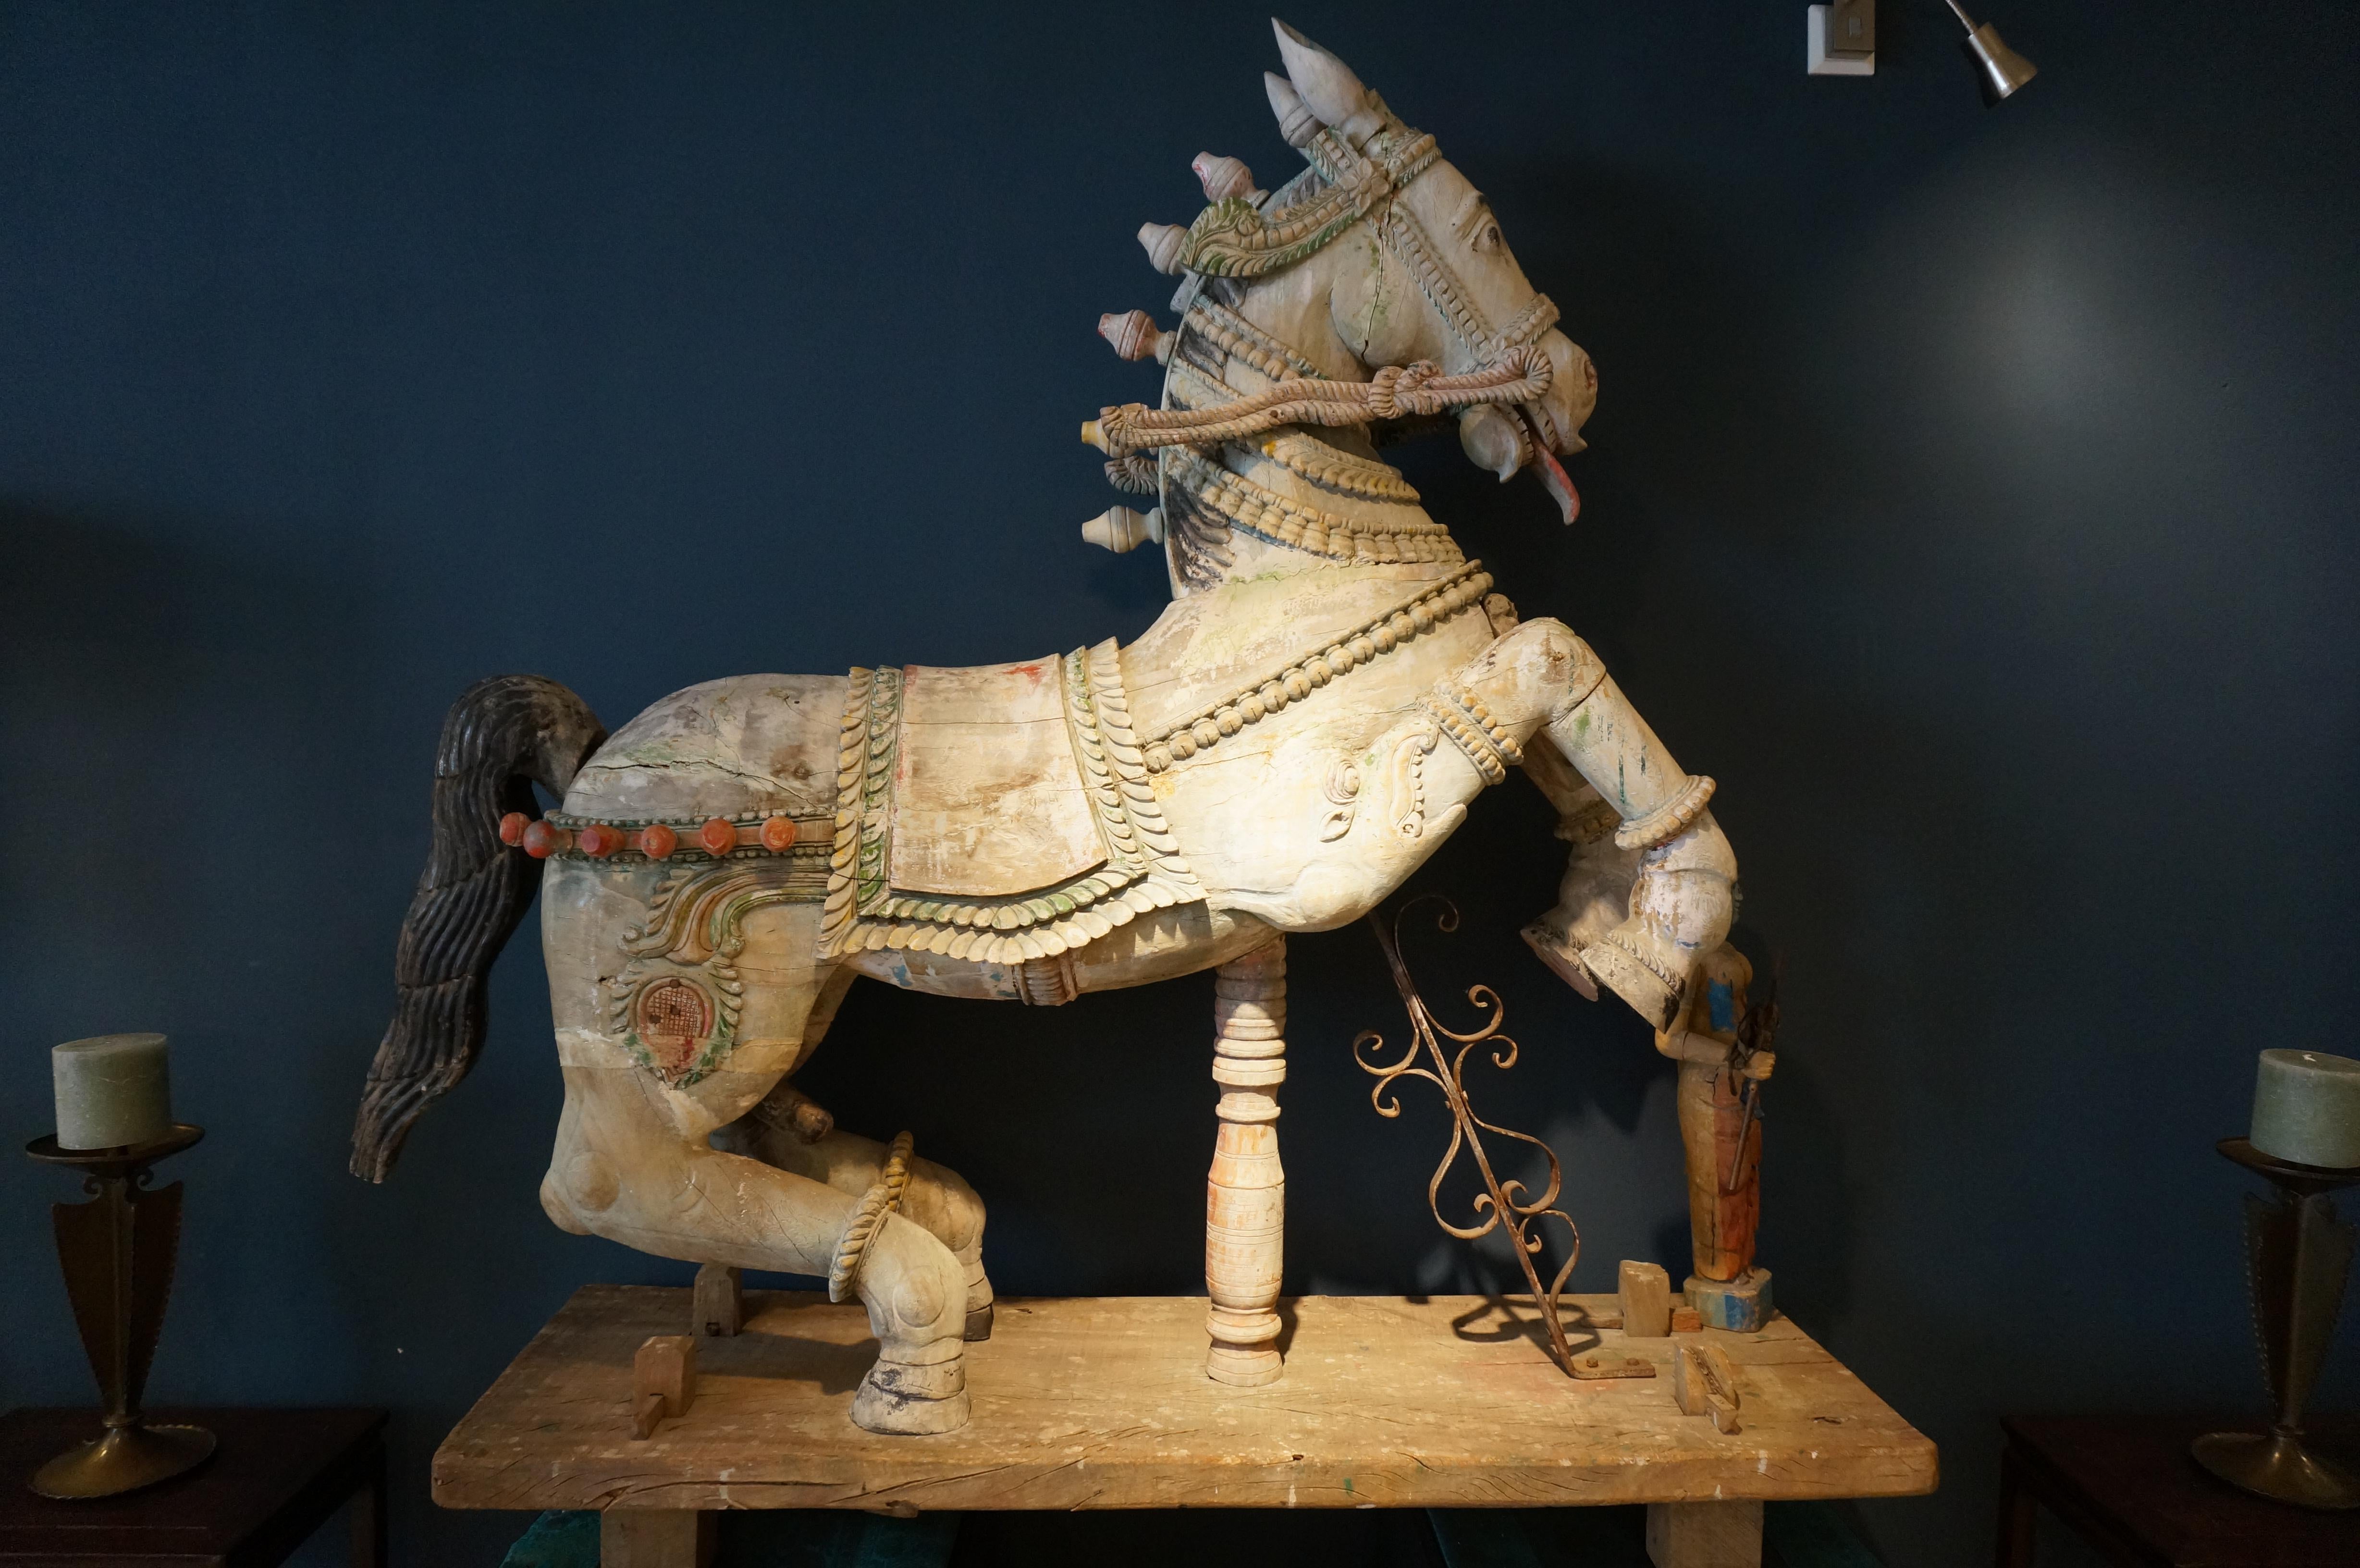 Große dekorative indische Hindu-Holzschnitzerei, die ein Pferd mit einem Diener (möglicherweise Shiva) darstellt und für Prozessionen verwendet wird.

Polychrome Holzschnitzerei. In gutem Zustand, einige Risse im Holz und eine Restaurierung am